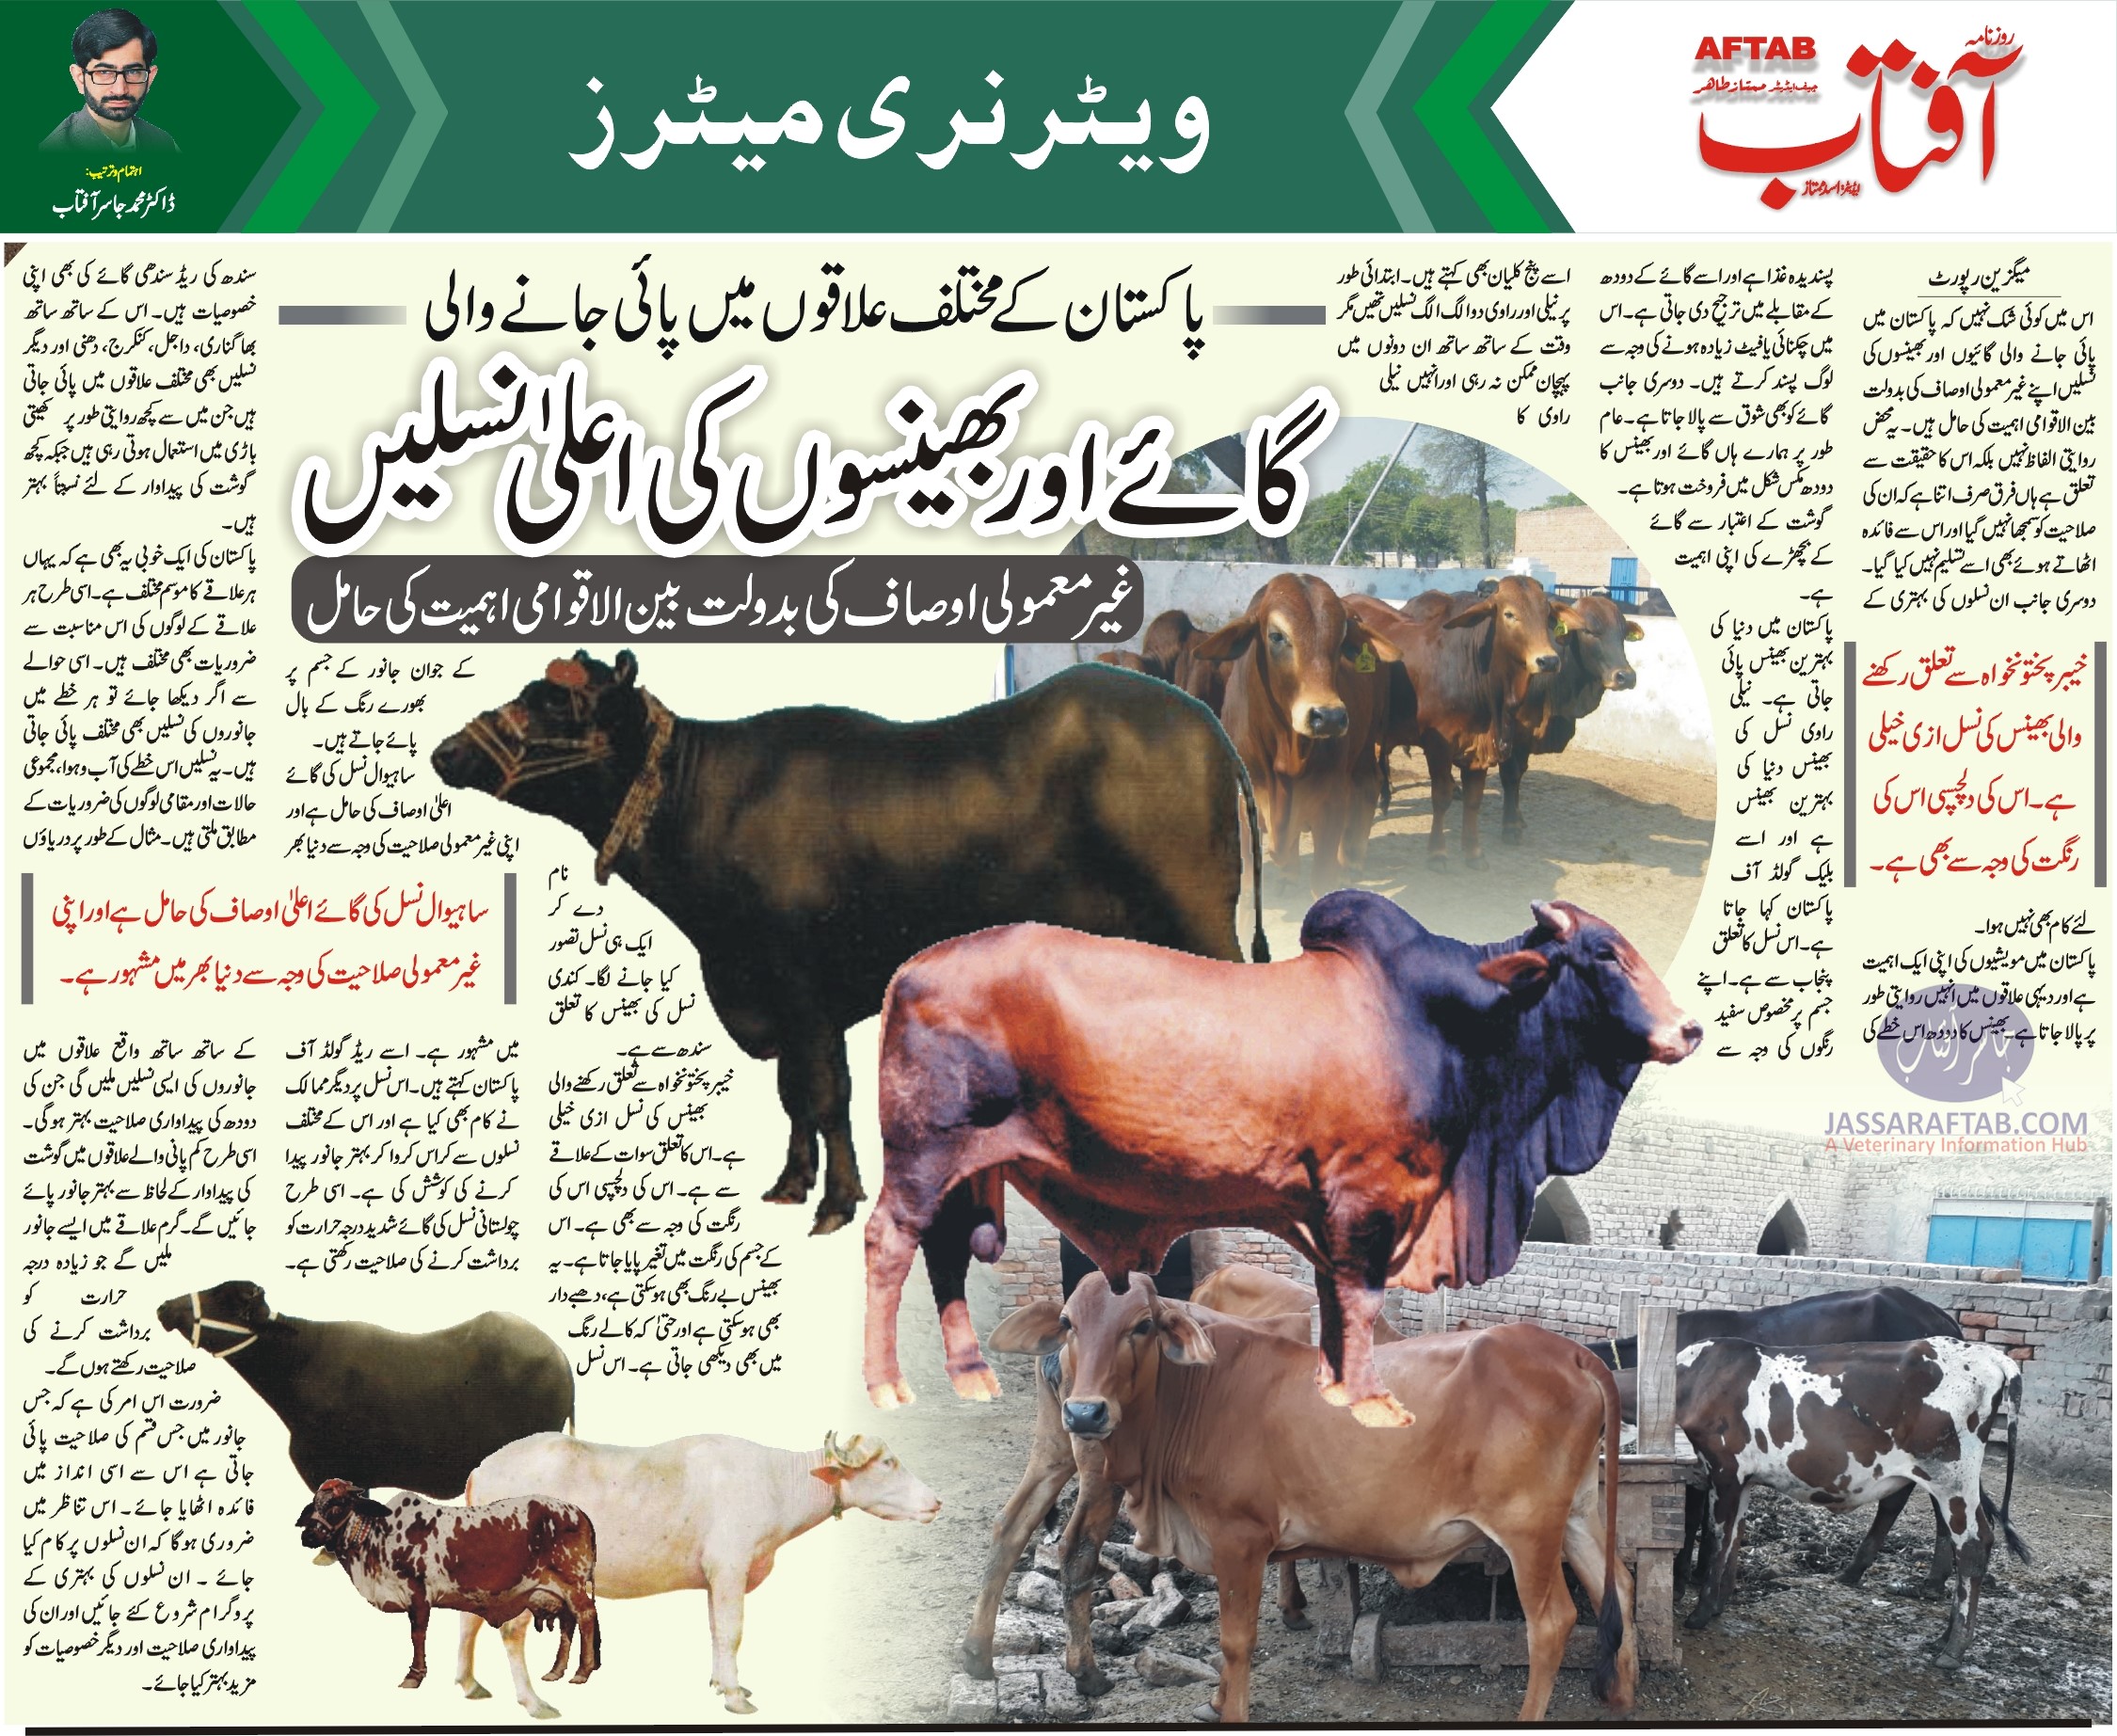 Pakistani Breeds of Cattle and Pakistani Breeds of Buffalo. Details of cattle breeds in Pakistan and buffalo breeds in Pakista